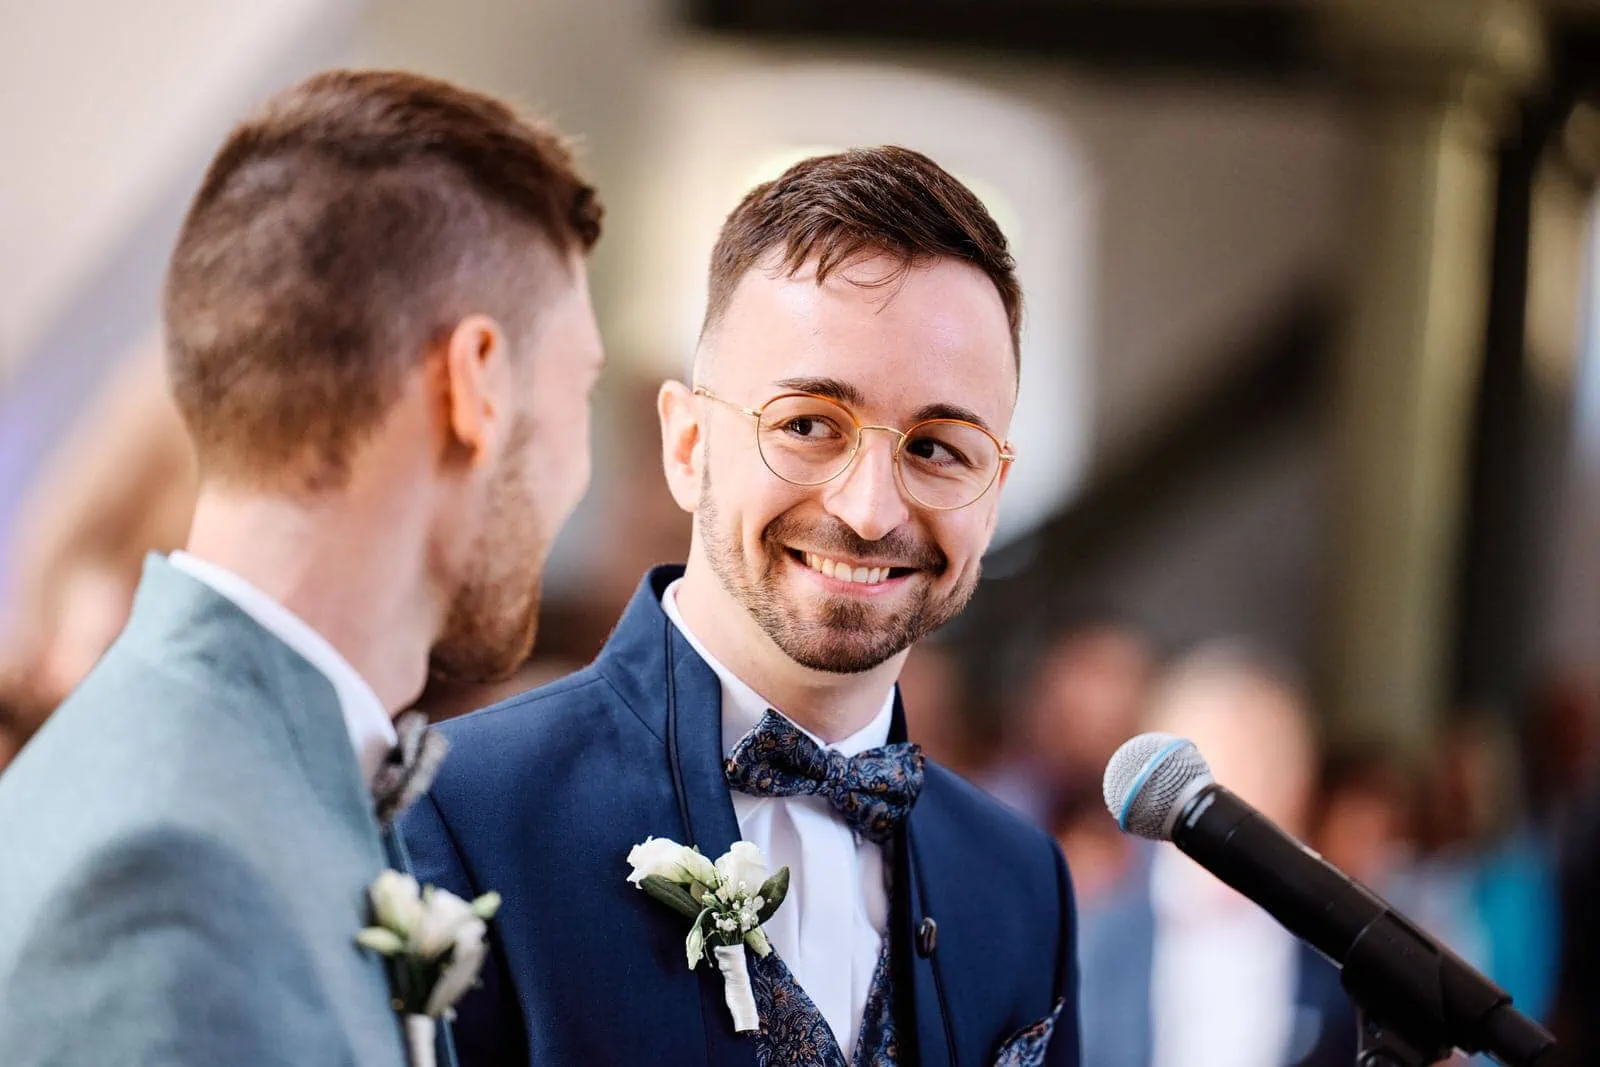 Strahlender Bräutigam lächelt liebevoll seinen zukünftigen Ehemann an. Eine bewegende Szene der Freude bei einer gleichgeschlechtlichen Hochzeit.